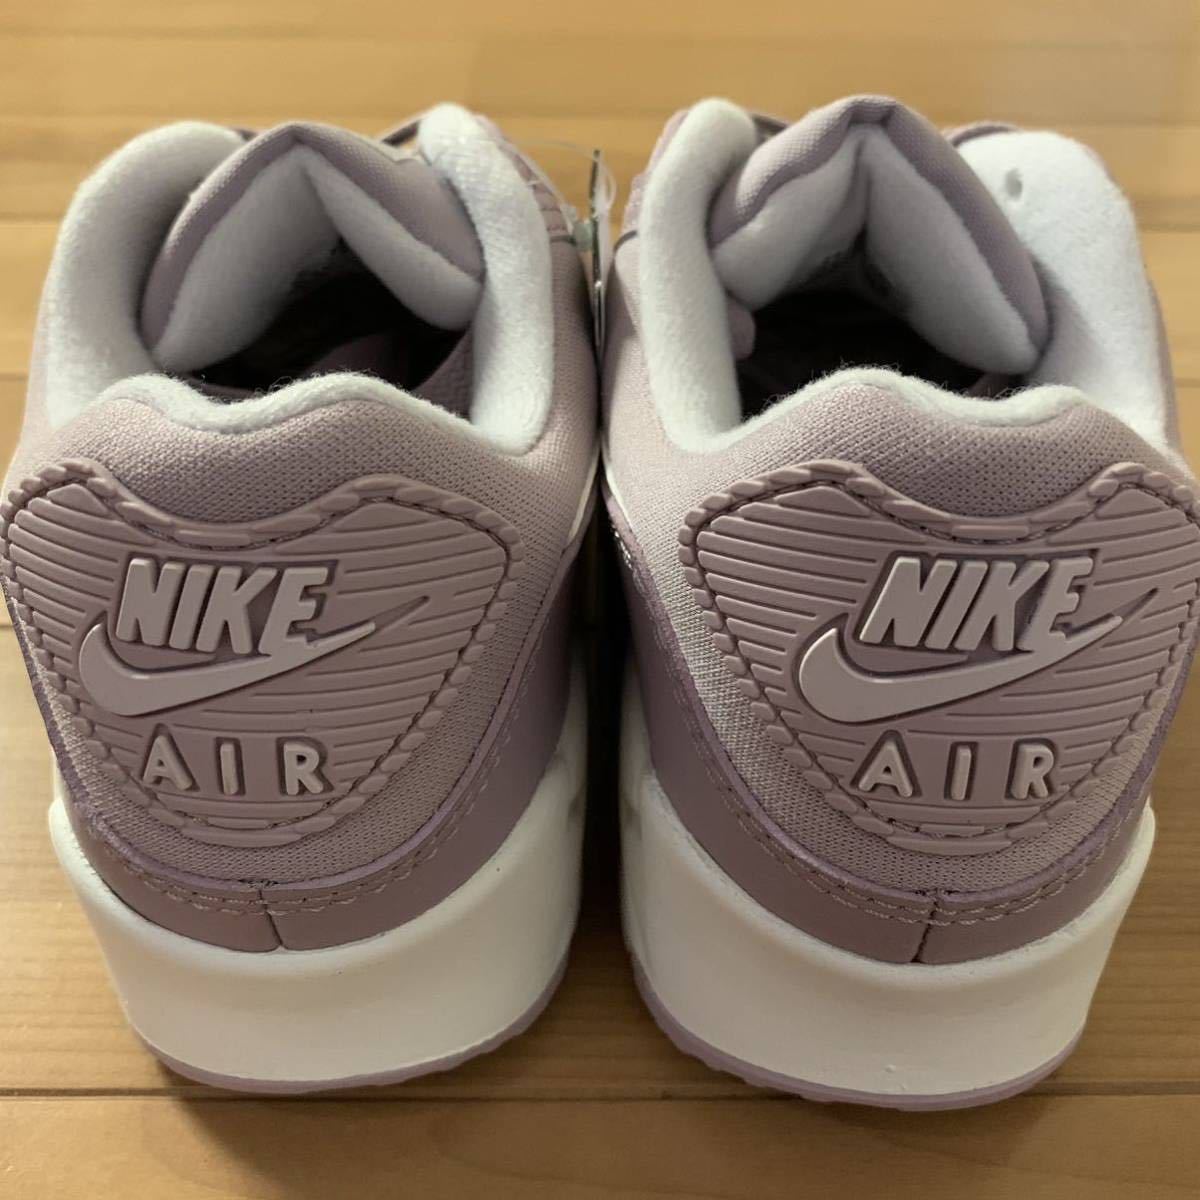 NIKE W AIR MAX 90 Nike wi мужской air max 90 спортивные туфли розовый лиловый фиолетовый US7.5 24.5cm внутренний стандартный товар новый товар не использовался ограничение популярный редкость 